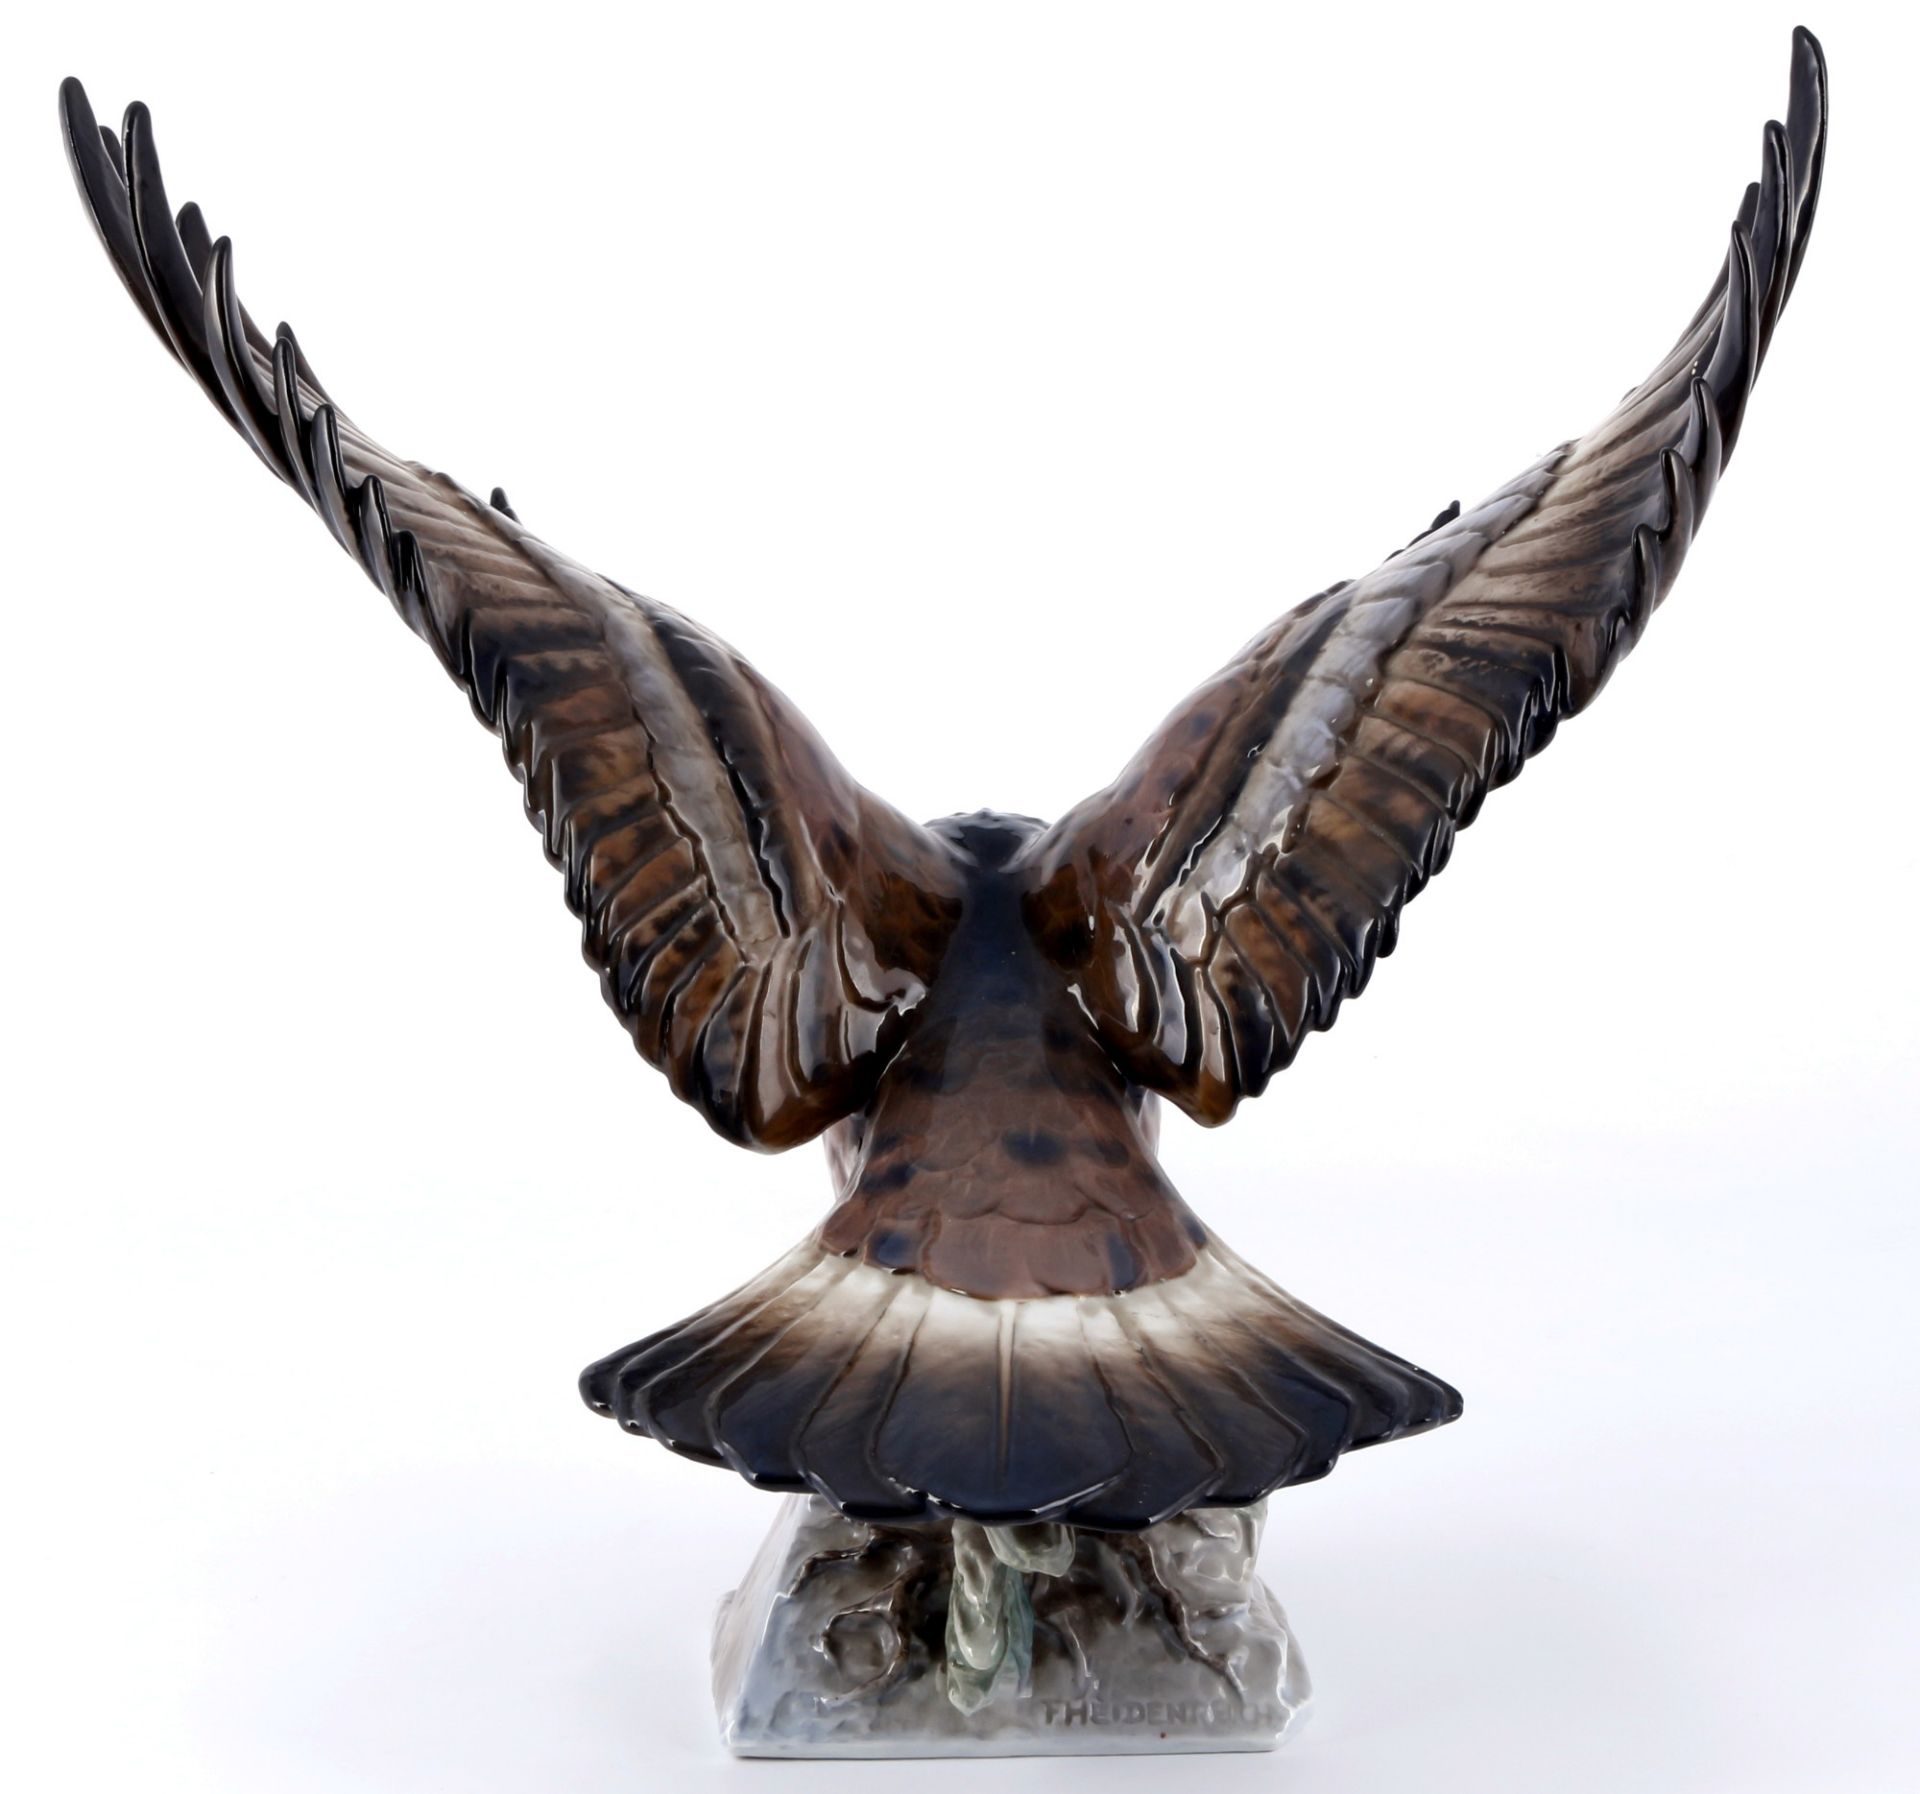 Rosenthal aufsteigender Adler, ascending eagle, - Bild 3 aus 8